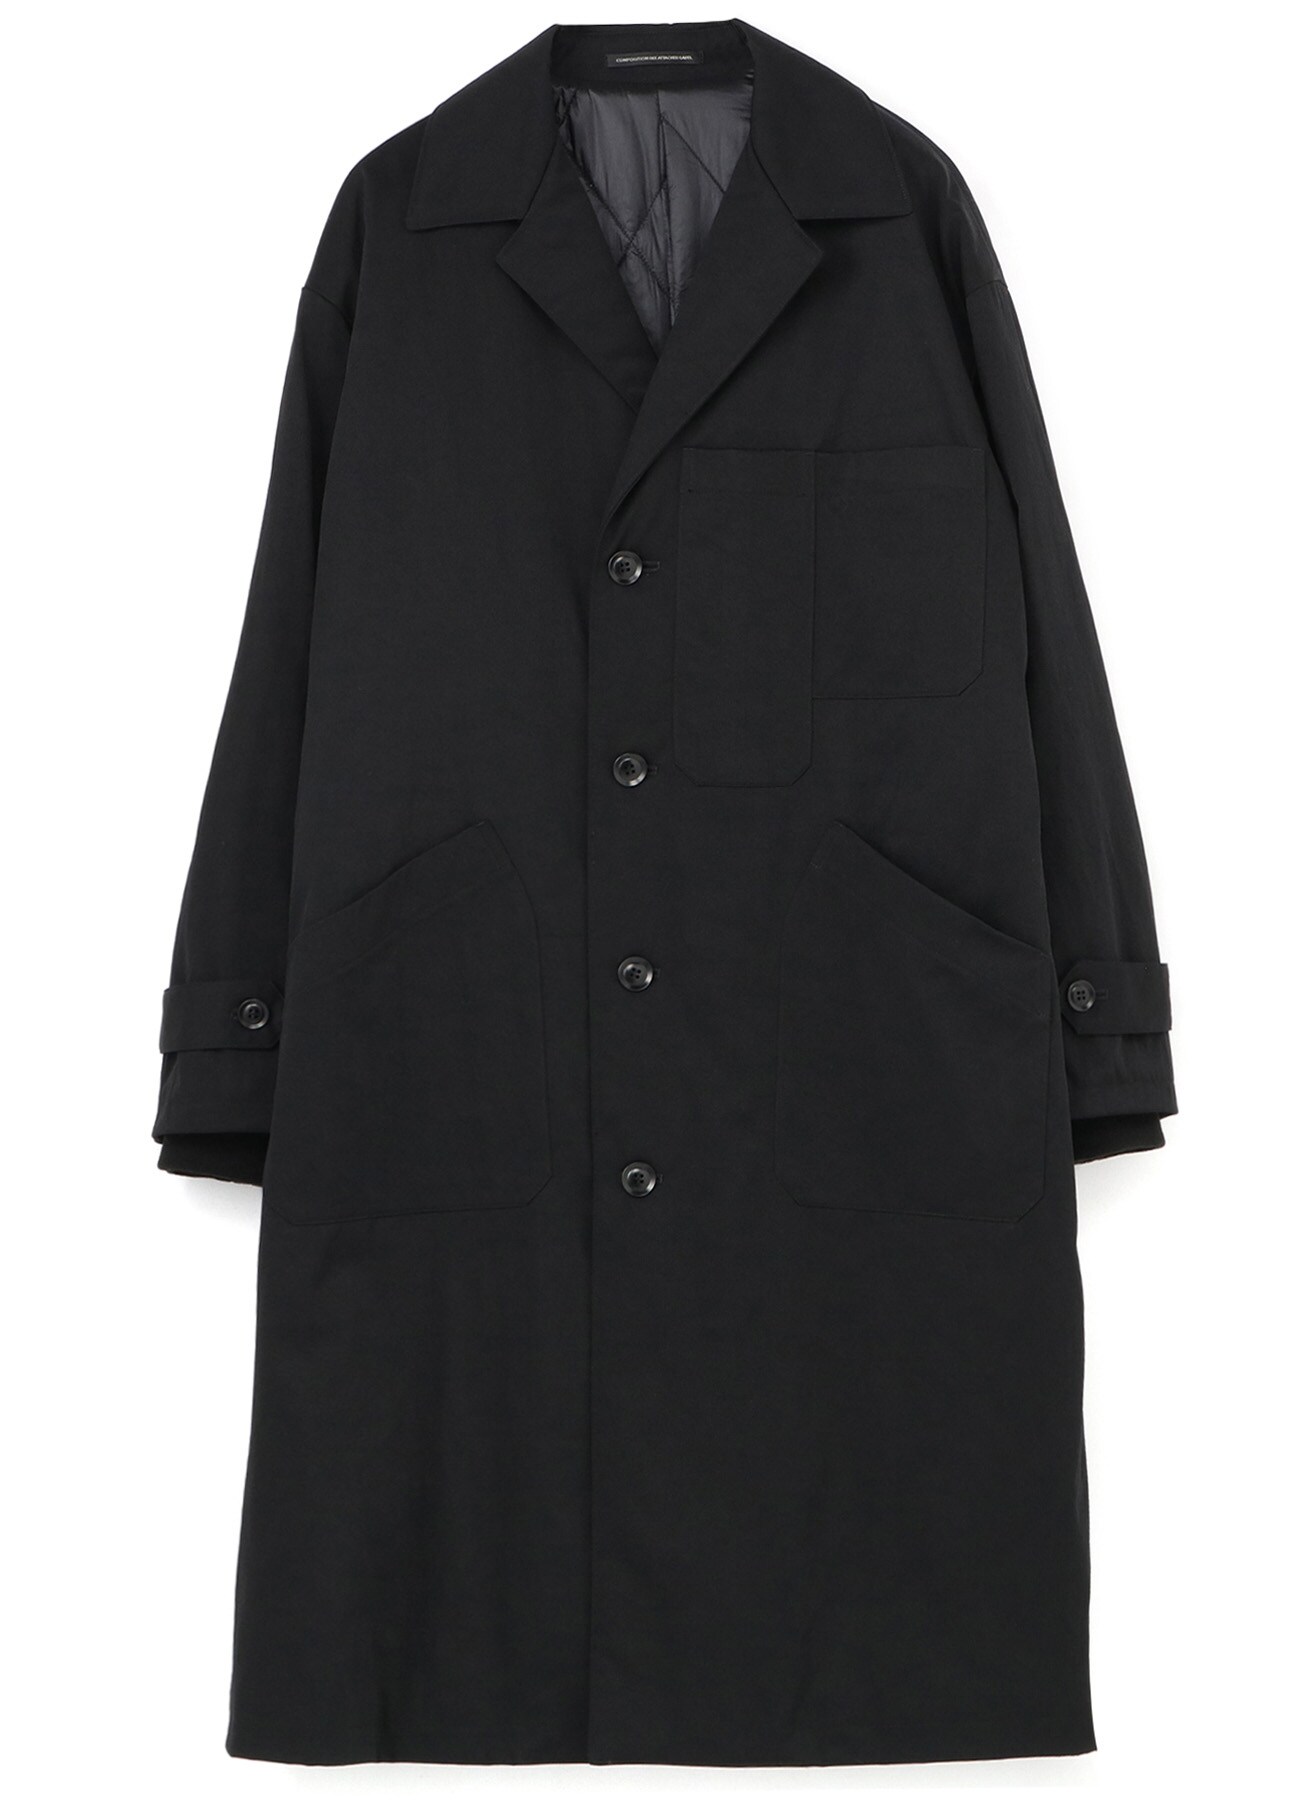 NYLON CHINO CLOTH LONG COAT